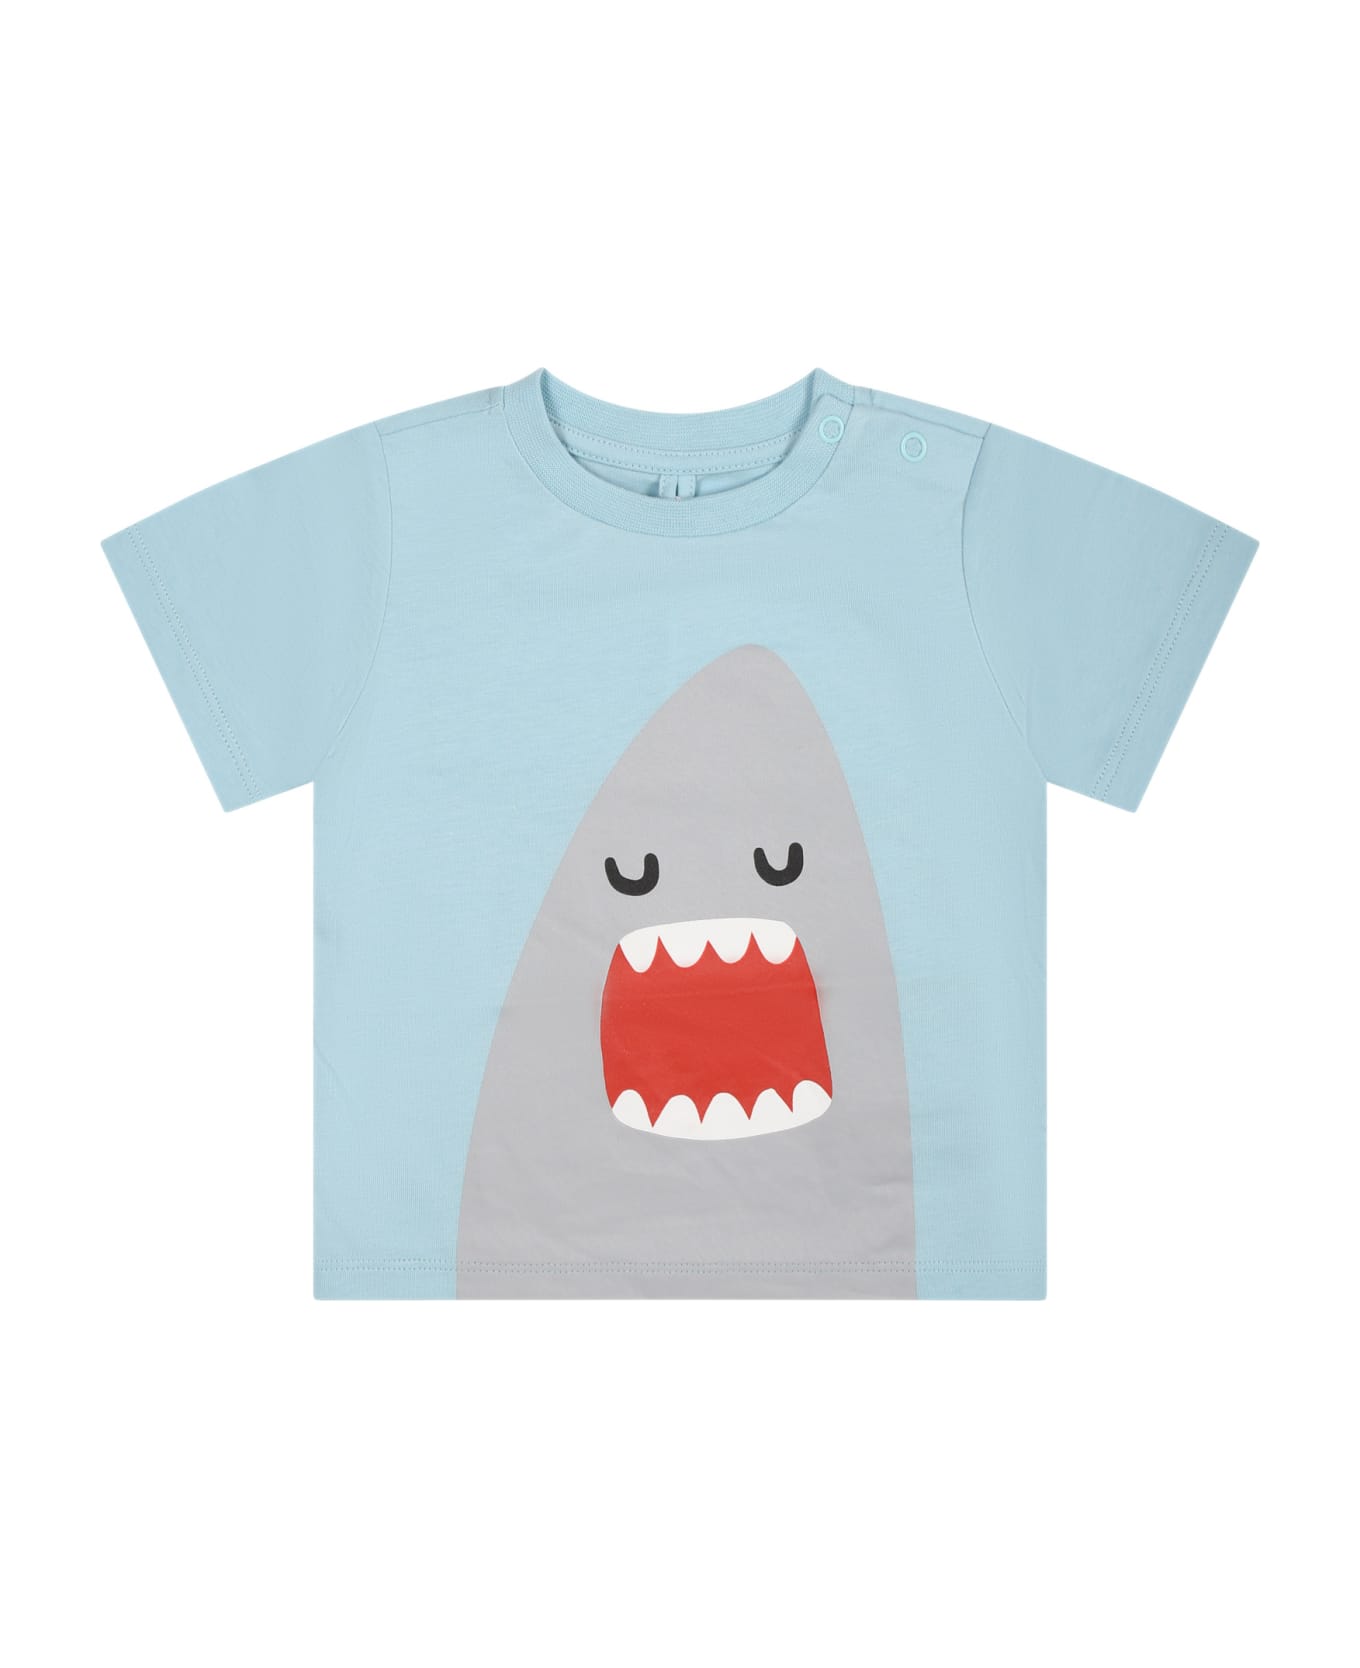 Stella McCartney Kids Light Blue T-shirt For Baby Boy With Shark - Light Blue